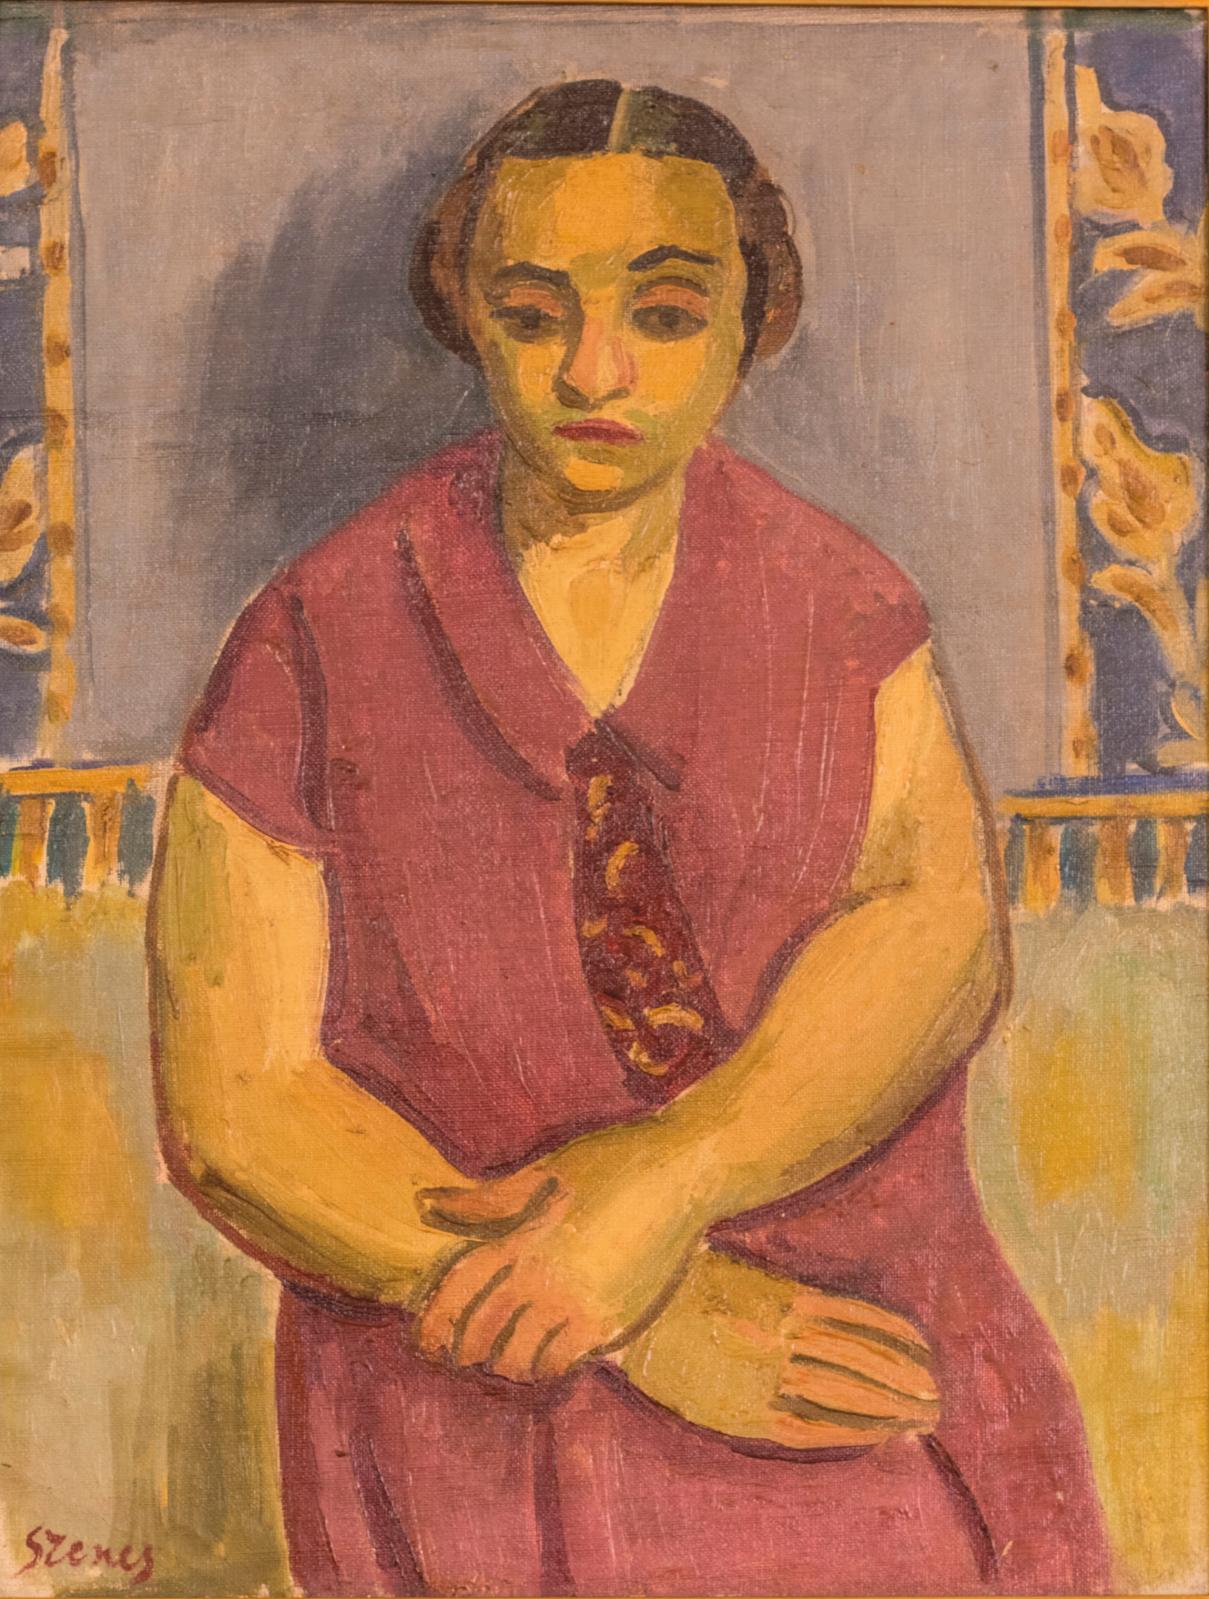 Dans cette huile sur toile provenant d’une collection particulière montpelliéraine, Árpád Szenes (1897-1985) livre un intime Portrait de F